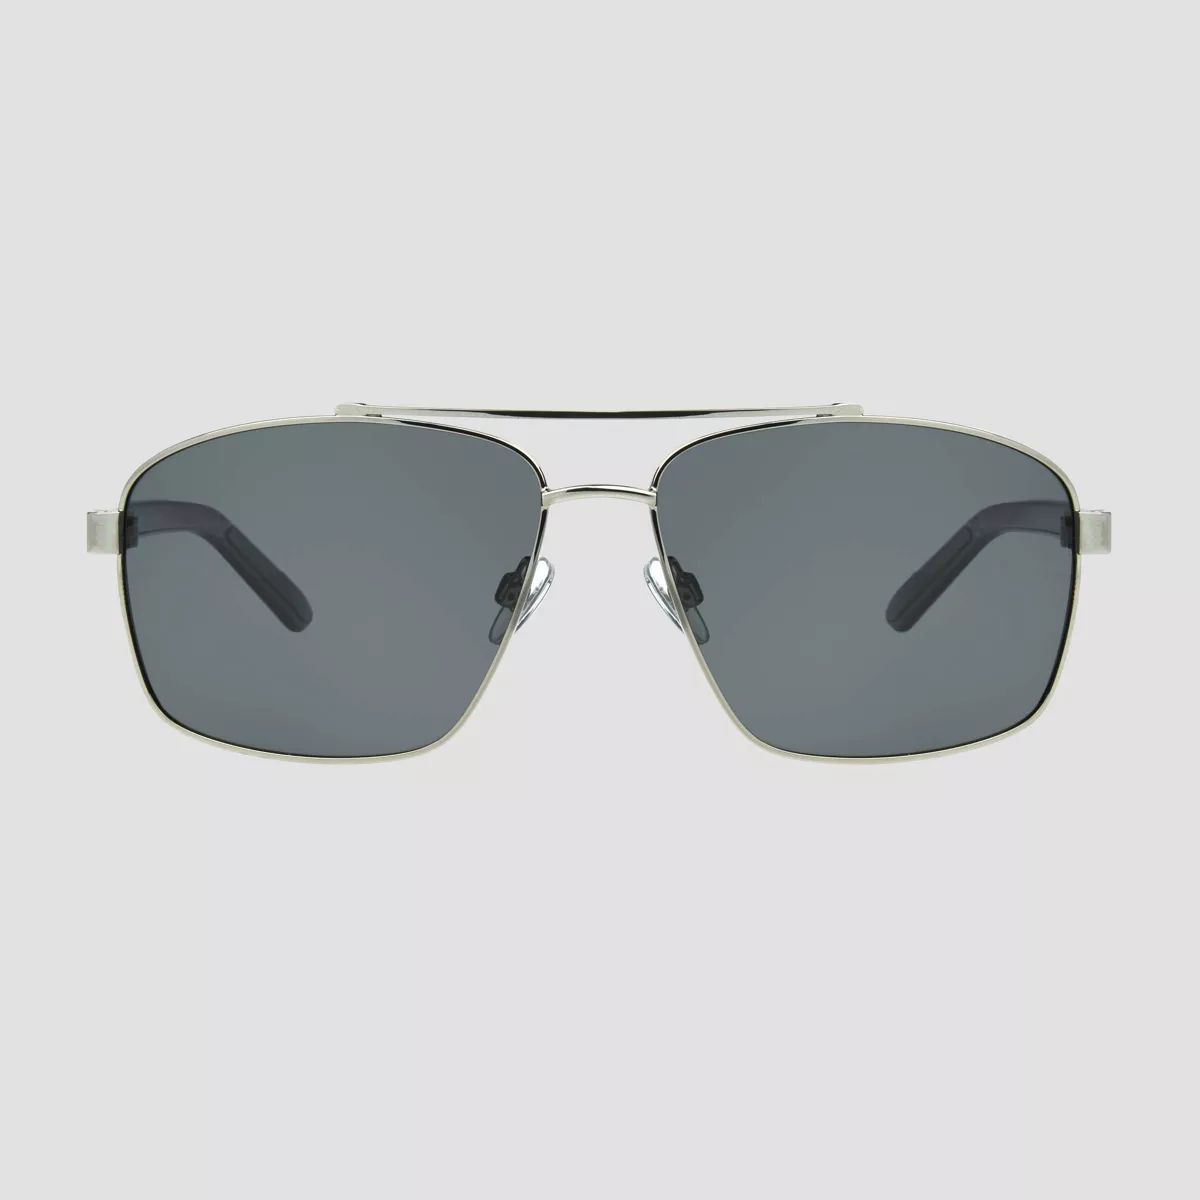 Men's Aviator Sunglasses - All In Motion™ Gray | Target